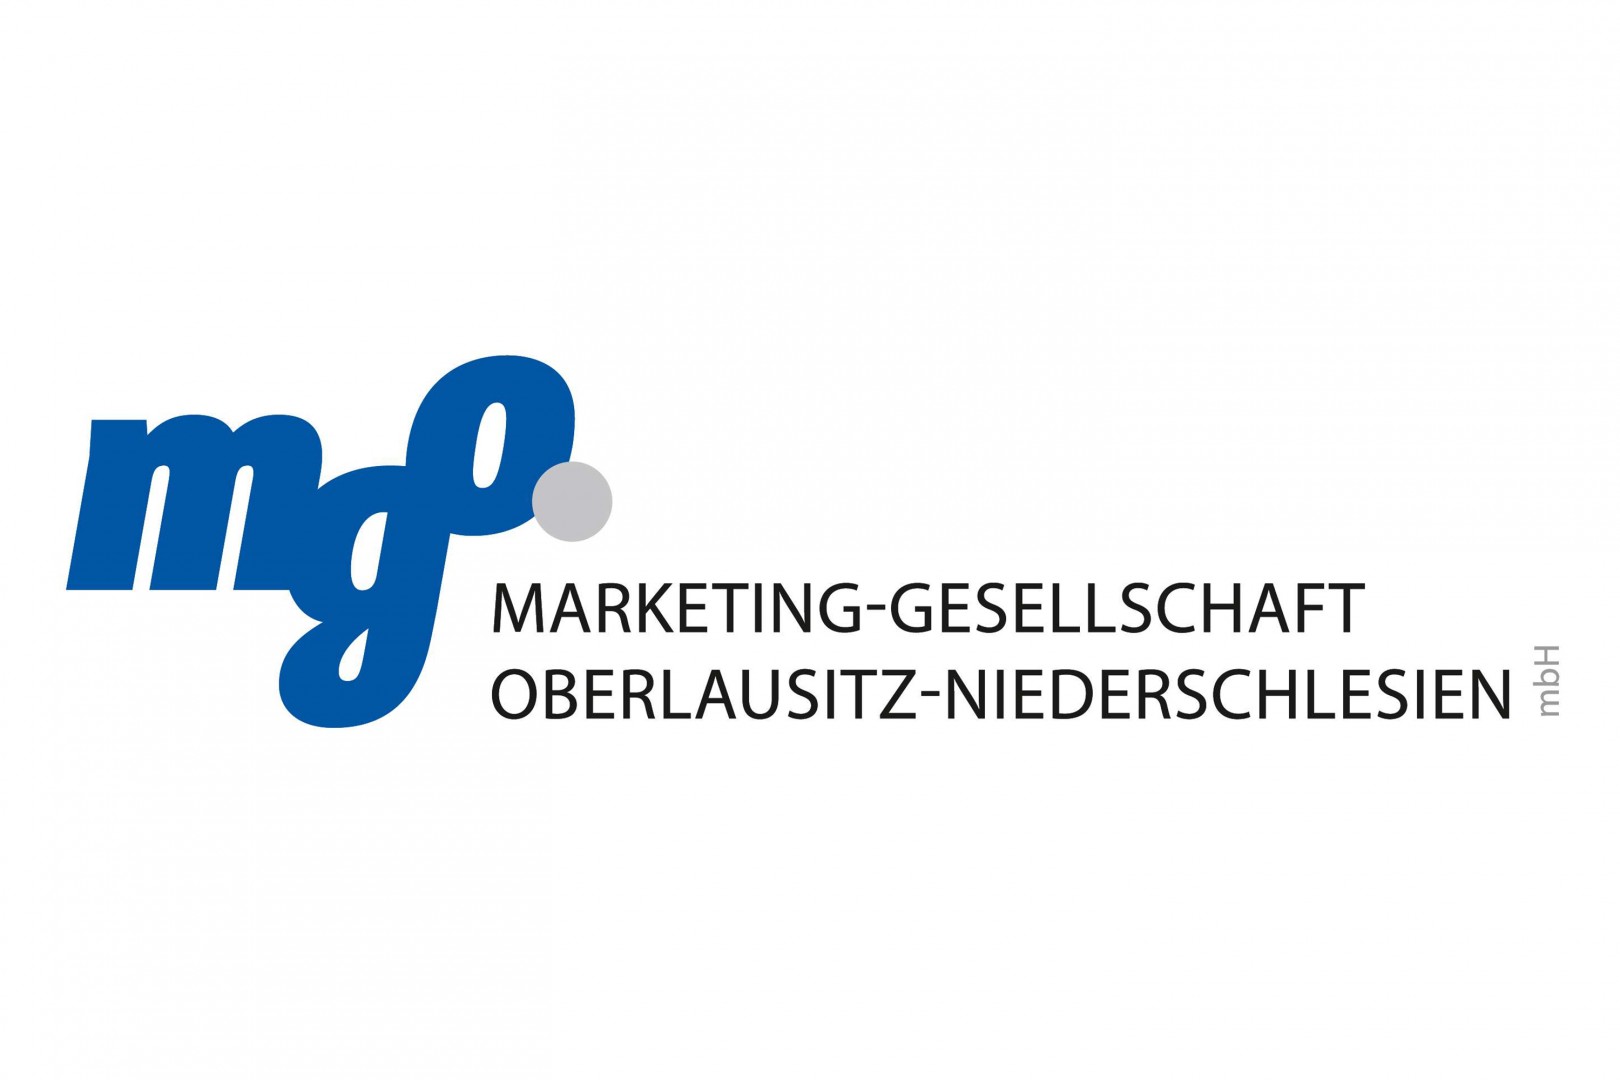 Marketing-Gesellschaft Oberlausitz-Niederschlesien mbH